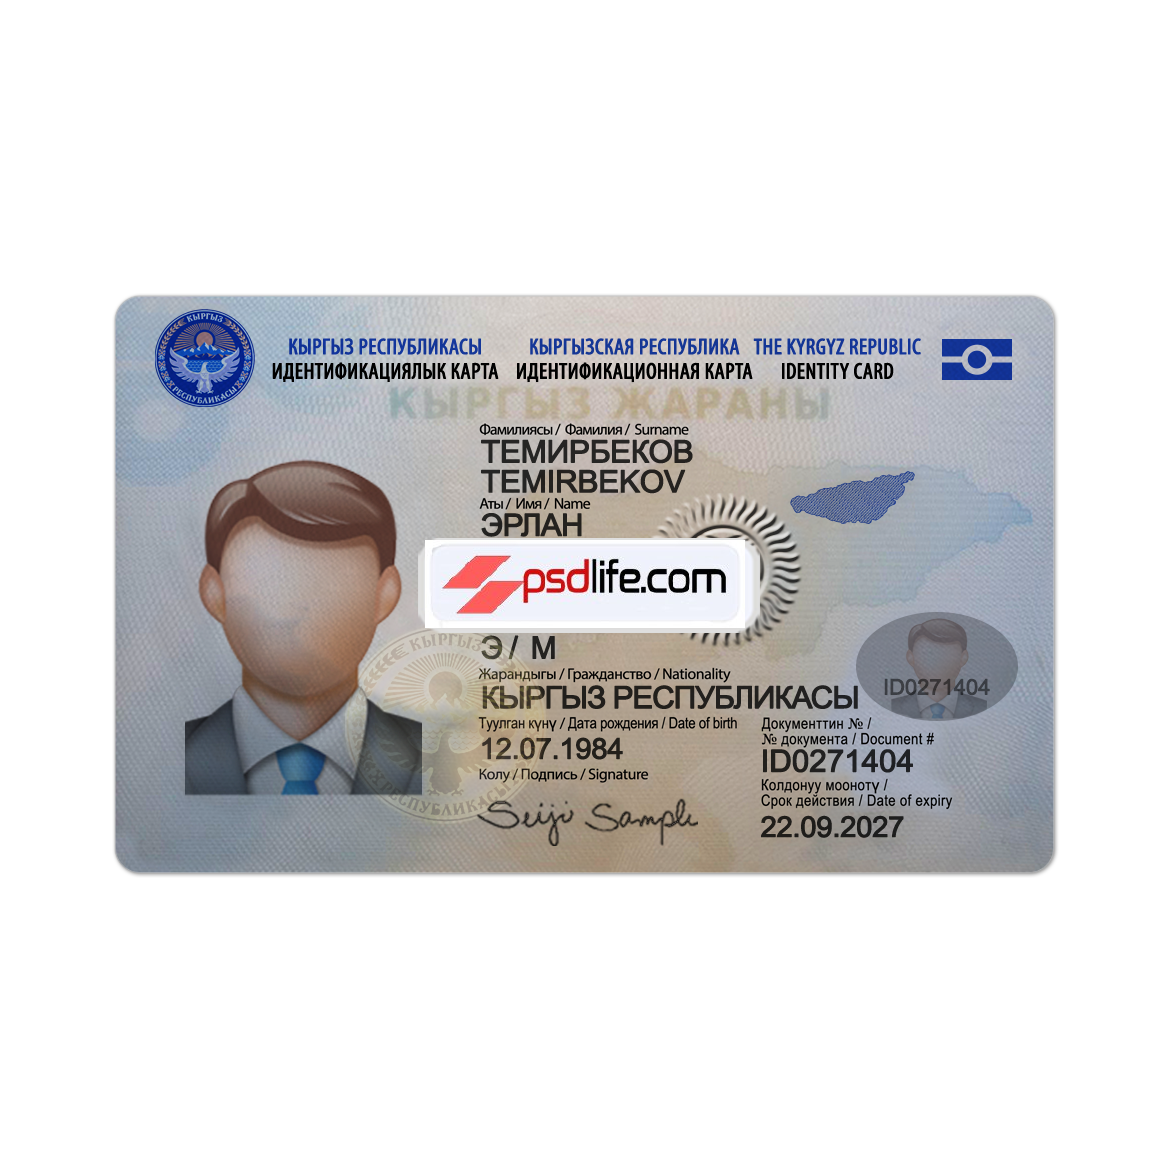 Kyrgyzstan ID CARD fake Psd Template editable